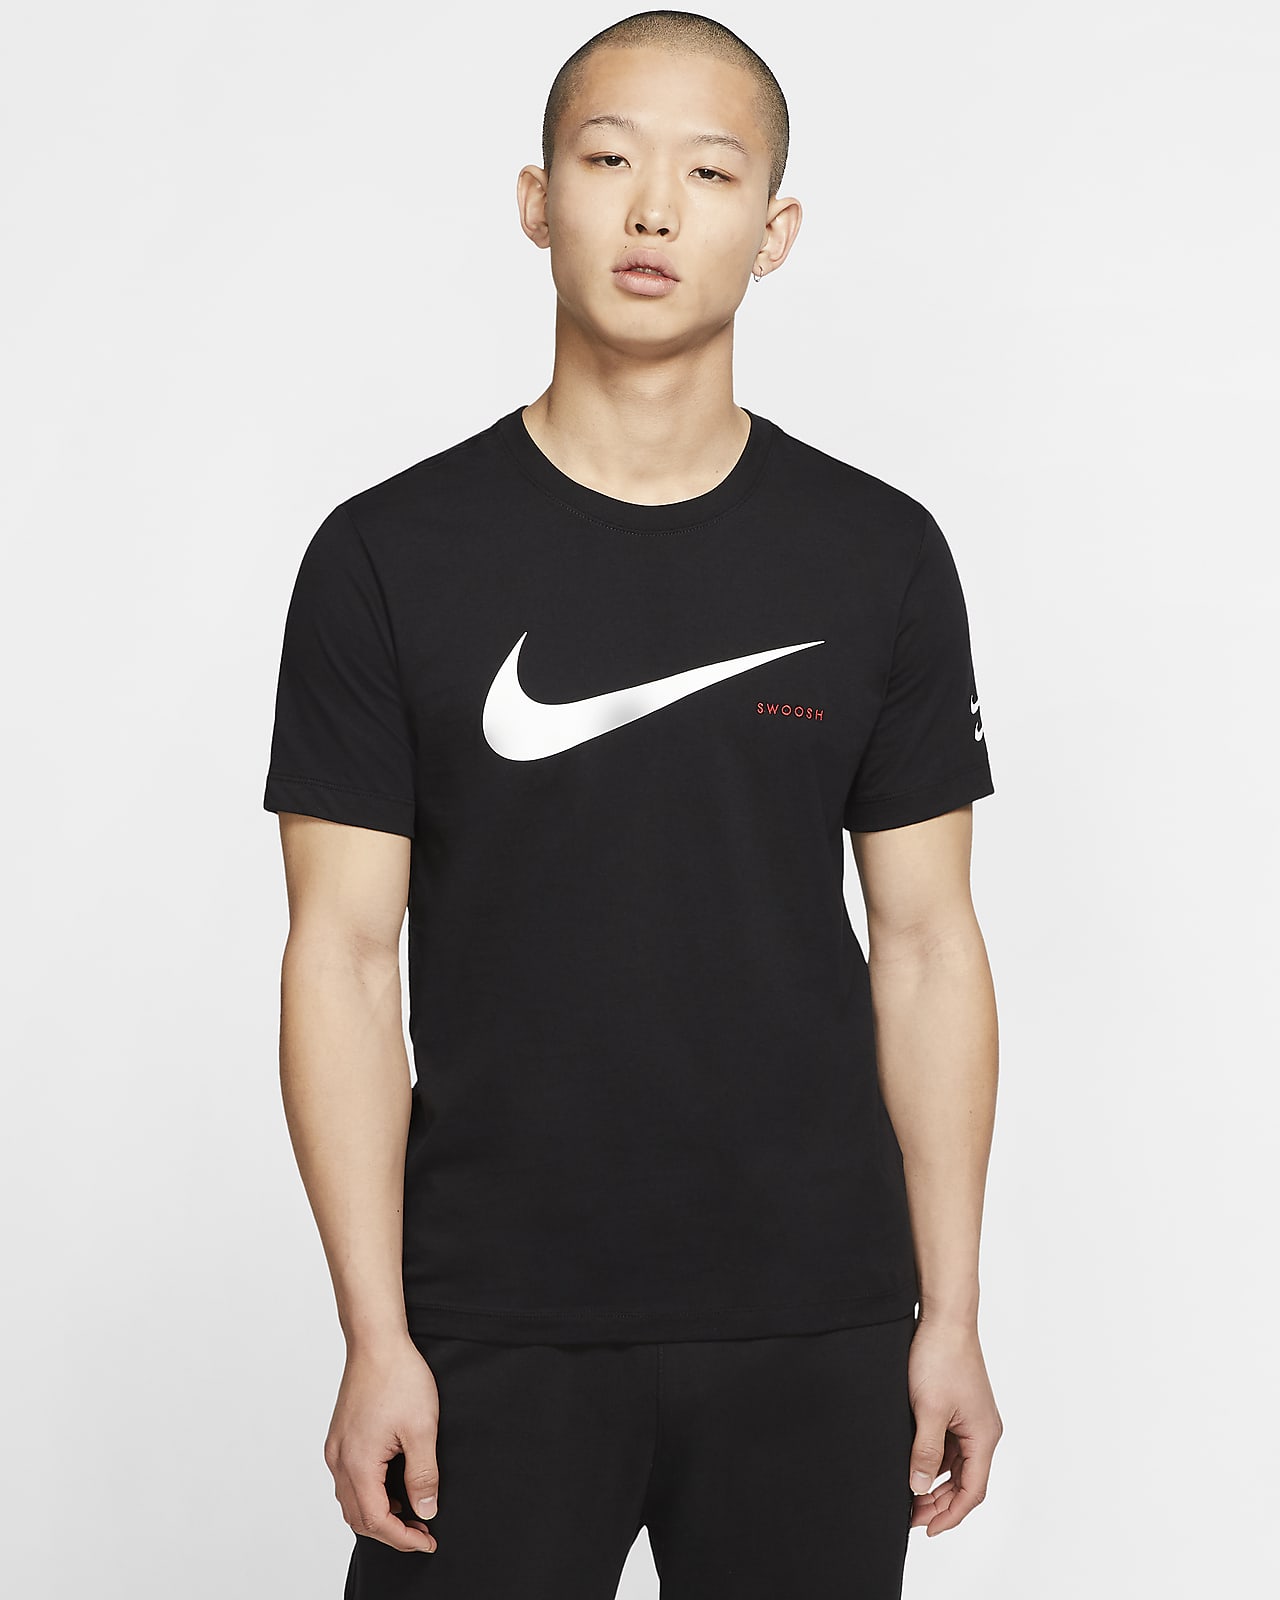 Nike Swoosh Tshirt | ubicaciondepersonas.cdmx.gob.mx